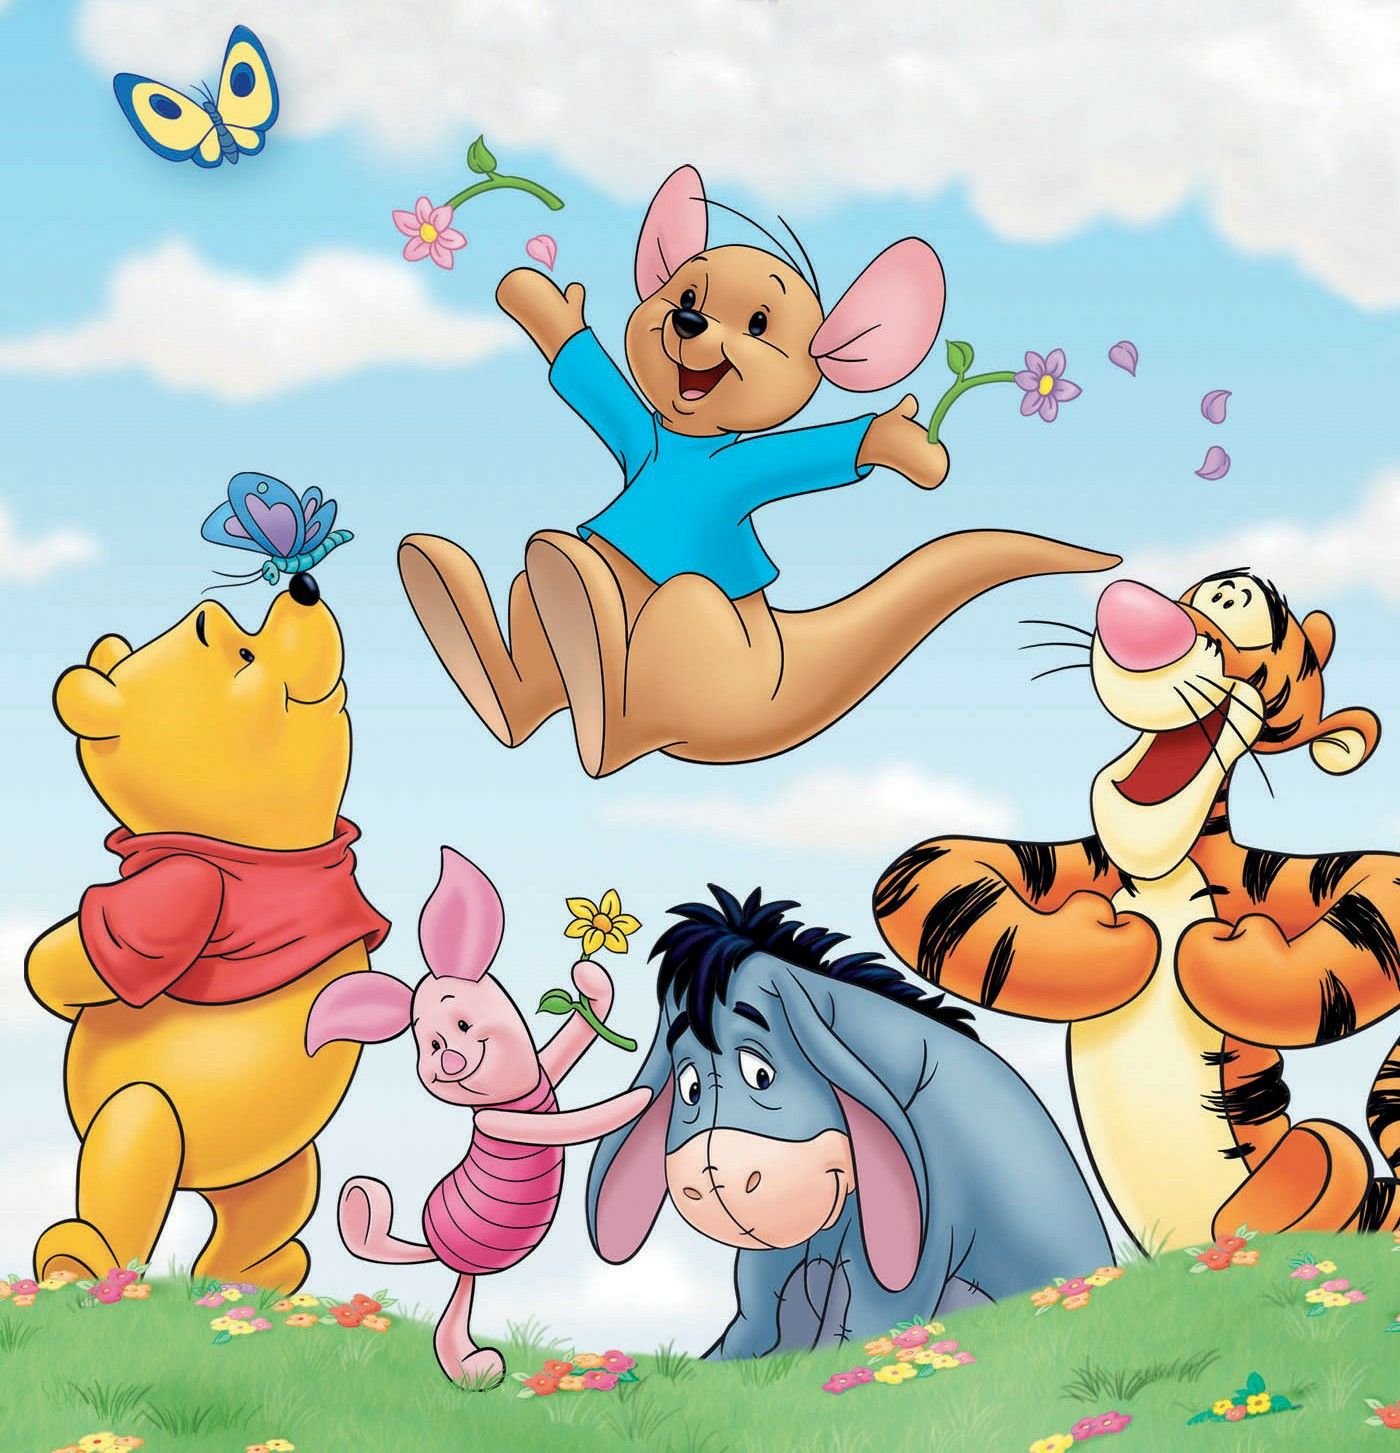 Disneytoon Studios. Disneytoon studios, Winnie the pooh, Pooh